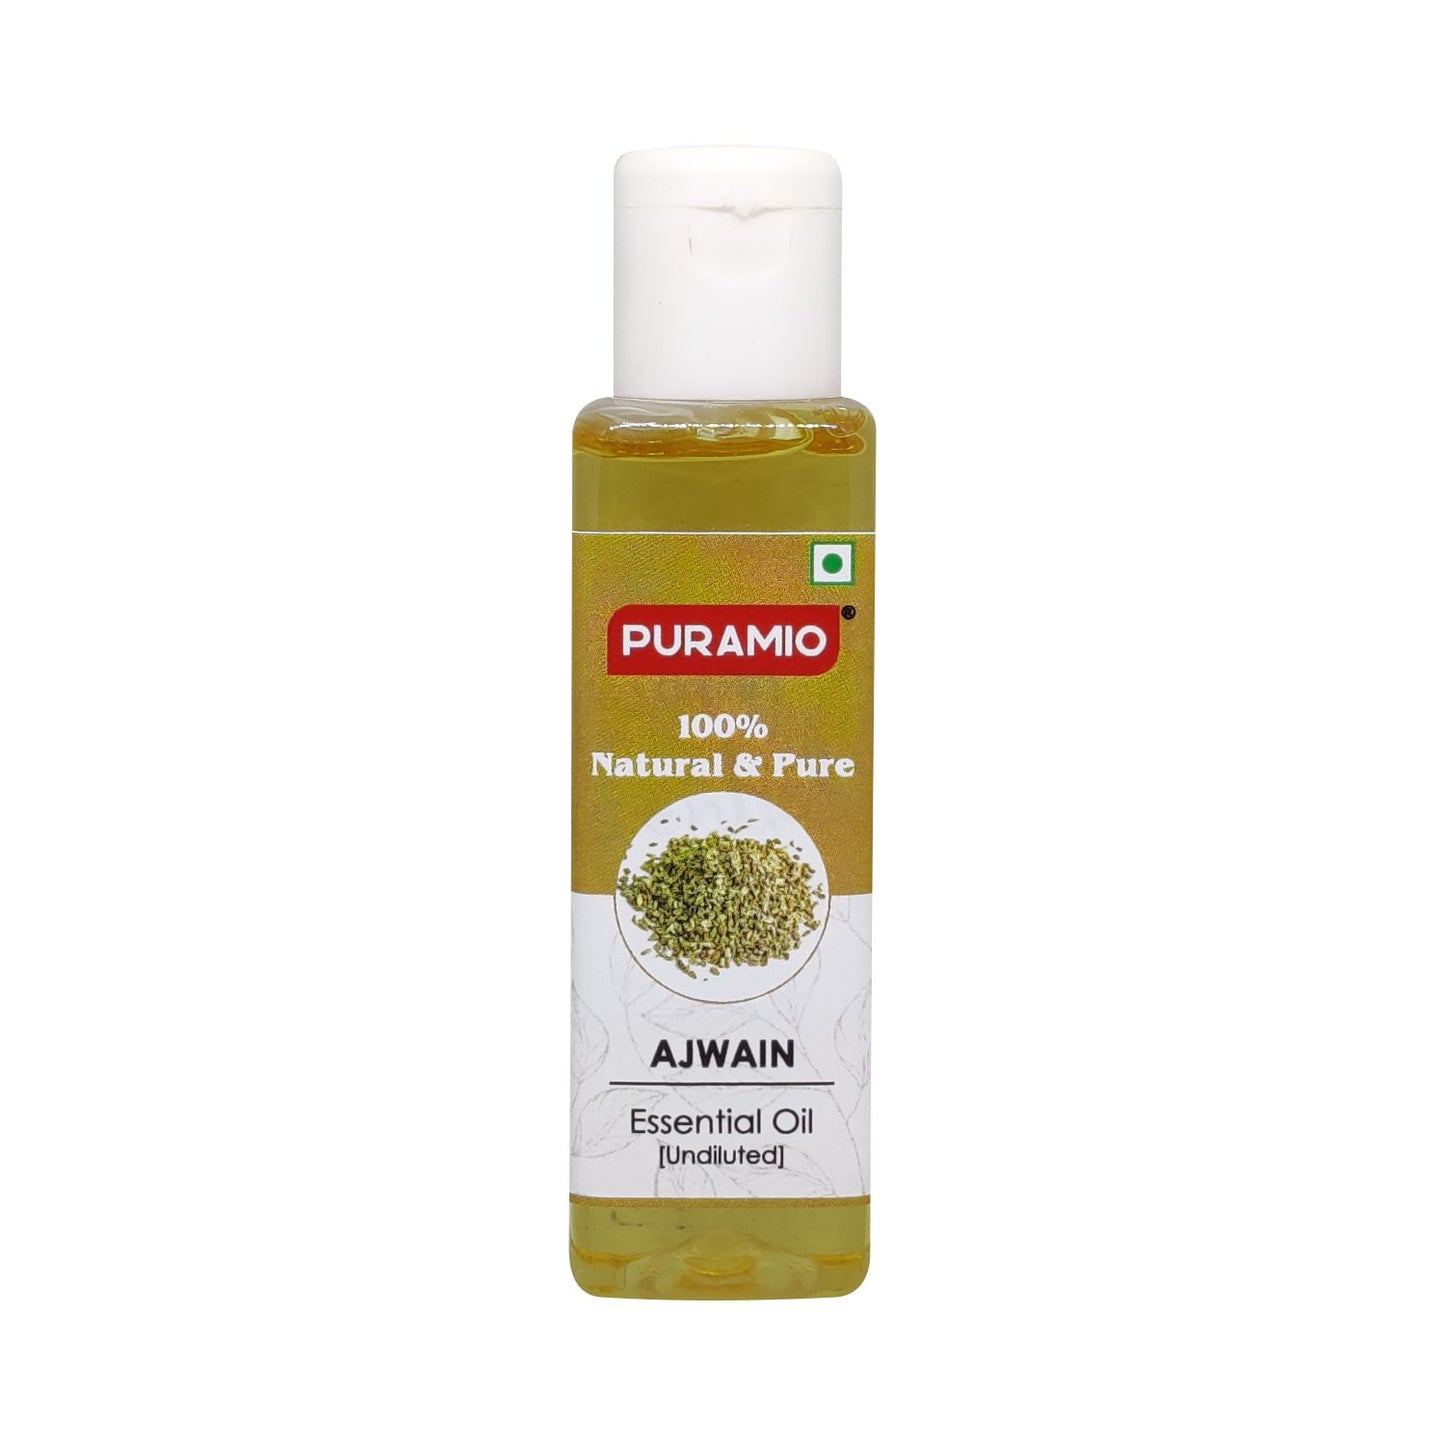 Puramio Ajwain Essential Oil [Undiluted]100% Natural & Pure, 30ml